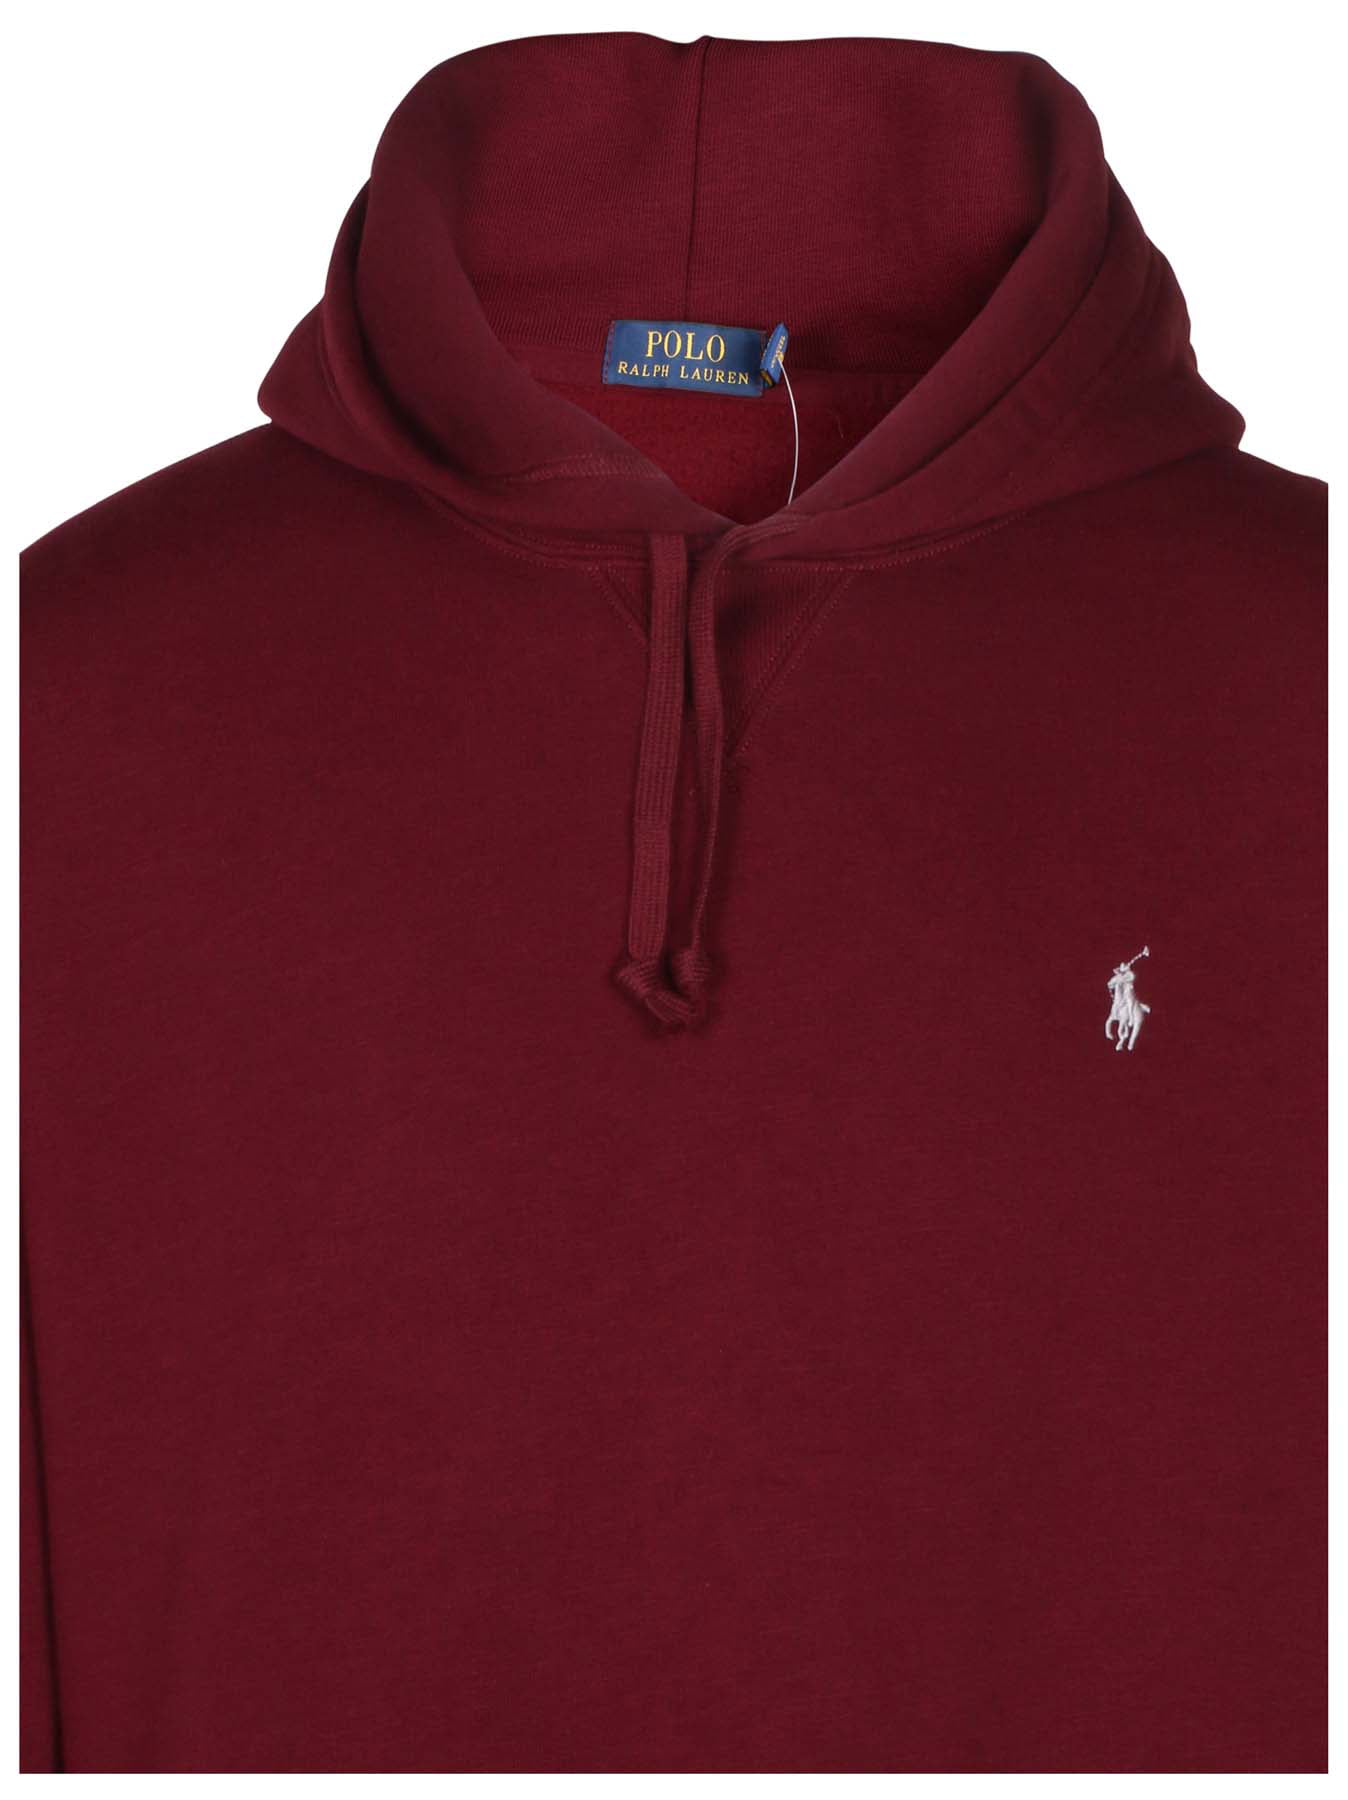 polo ralph lauren maroon hoodie